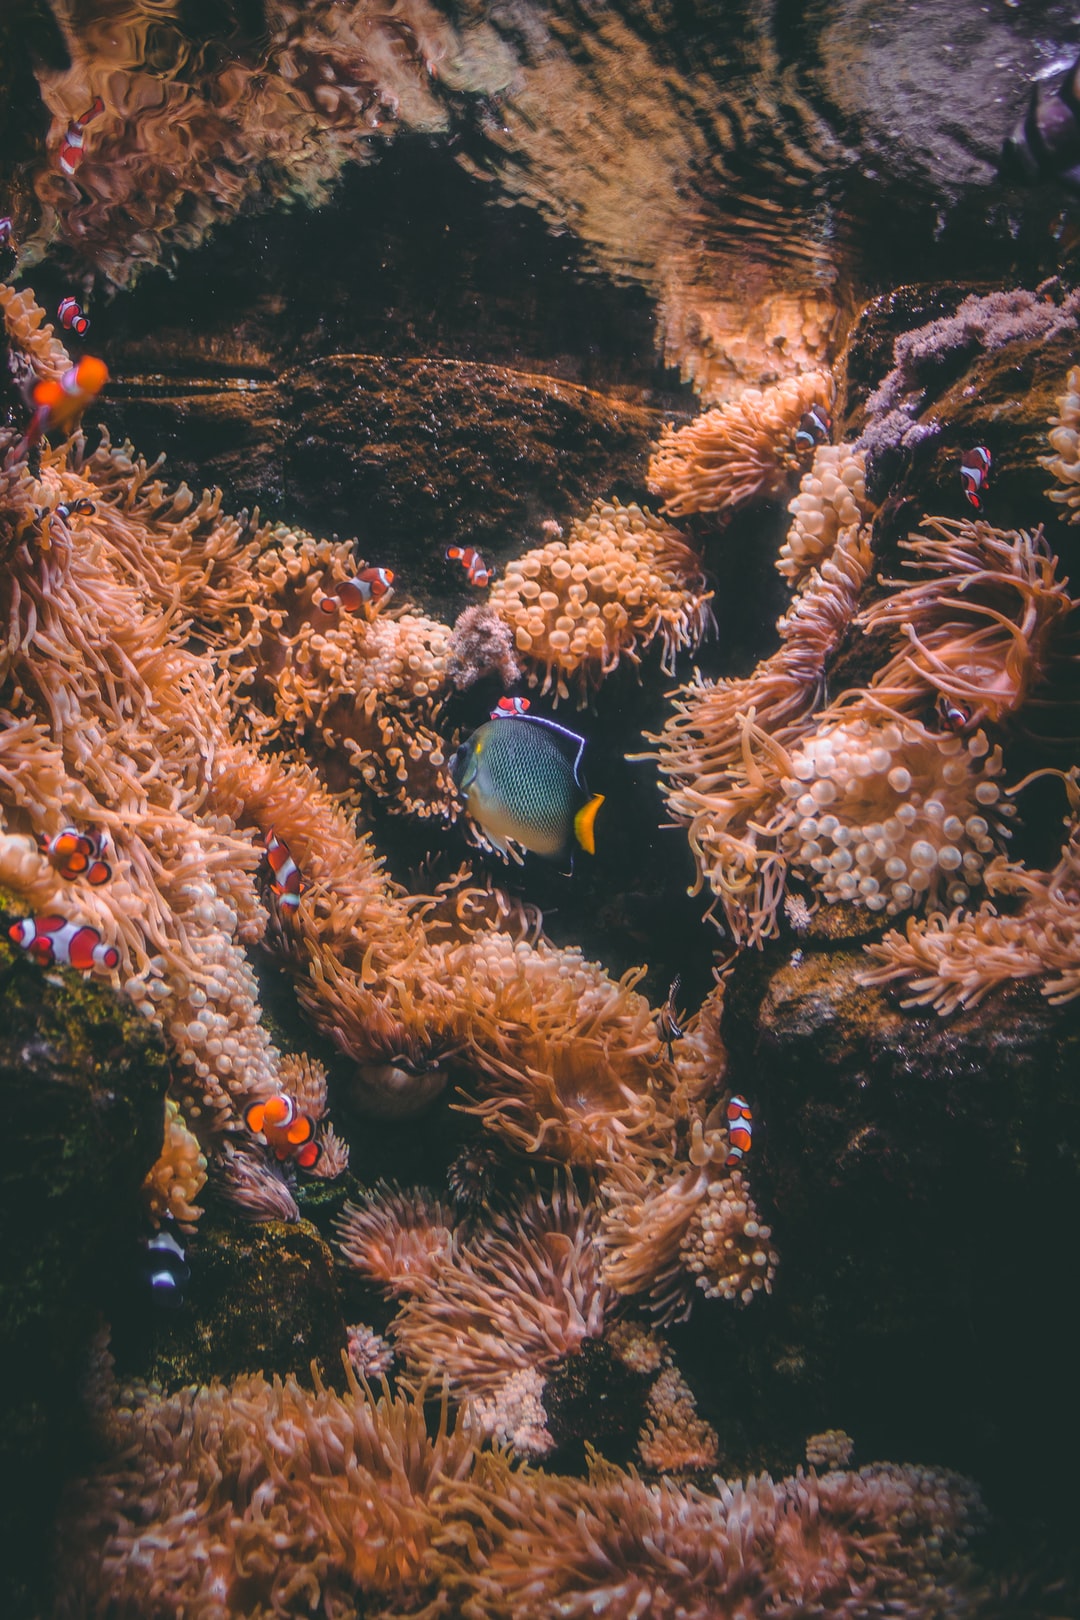 25 wichtige Fragen zu Größtes Aquarium Europas